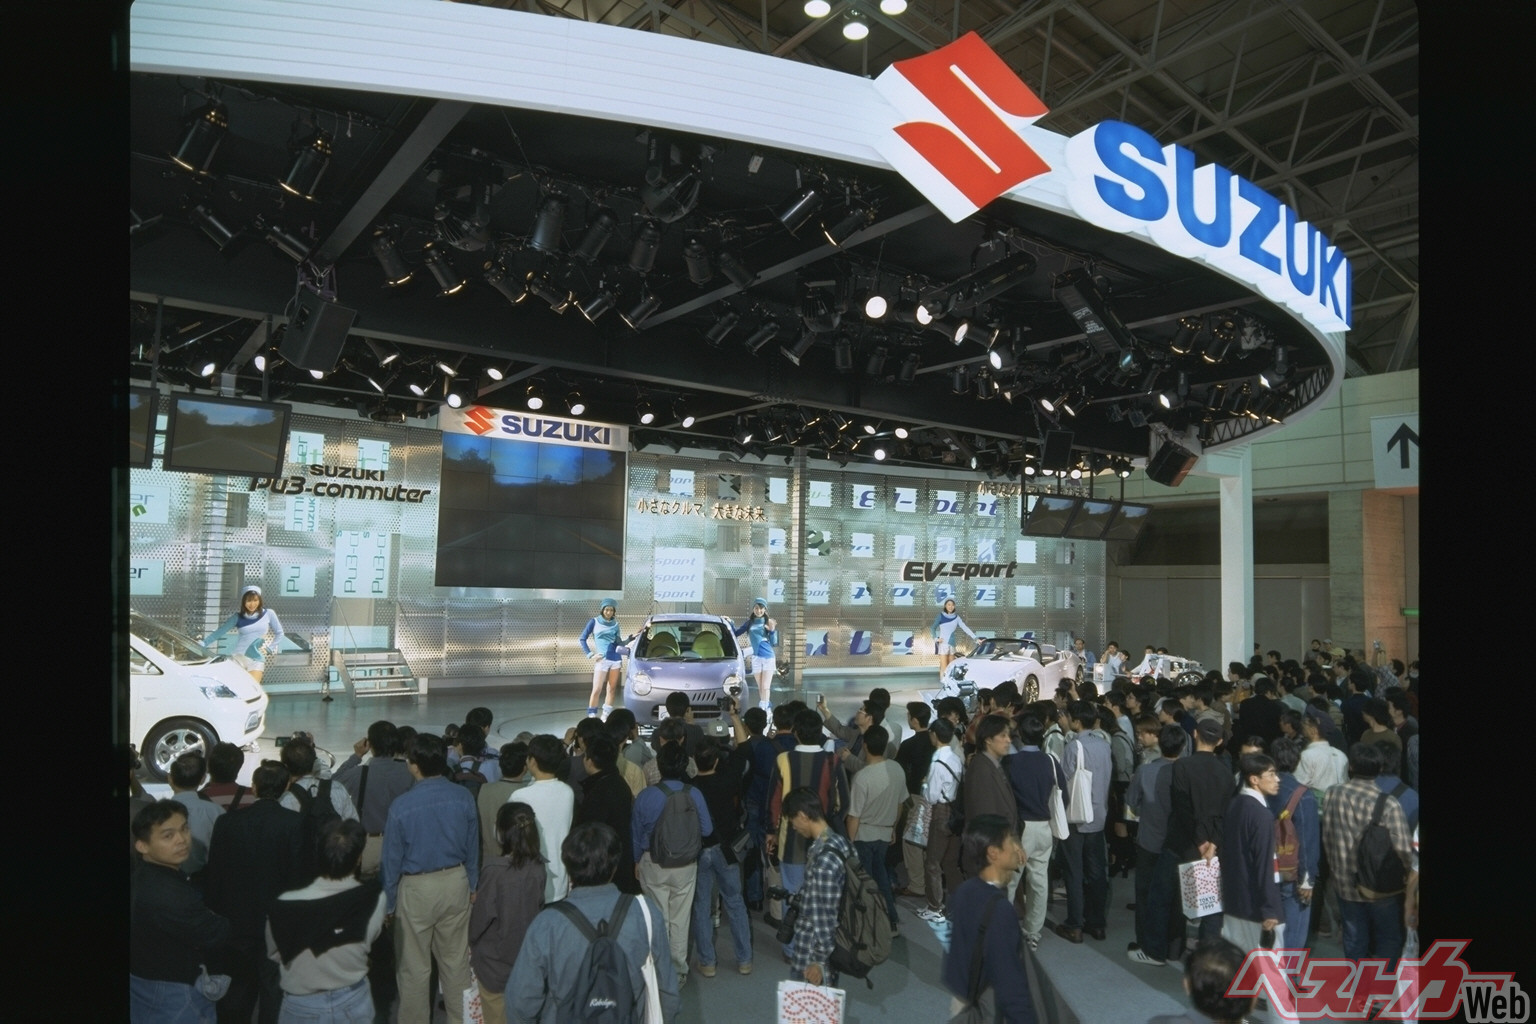 ツインは1999年に開催された第33回東京モーターショーに参考出品された「Pu-3コミュータ」をベースにしたふたり乗りのシティコミューターとして、2003年1月に市場へ導入された